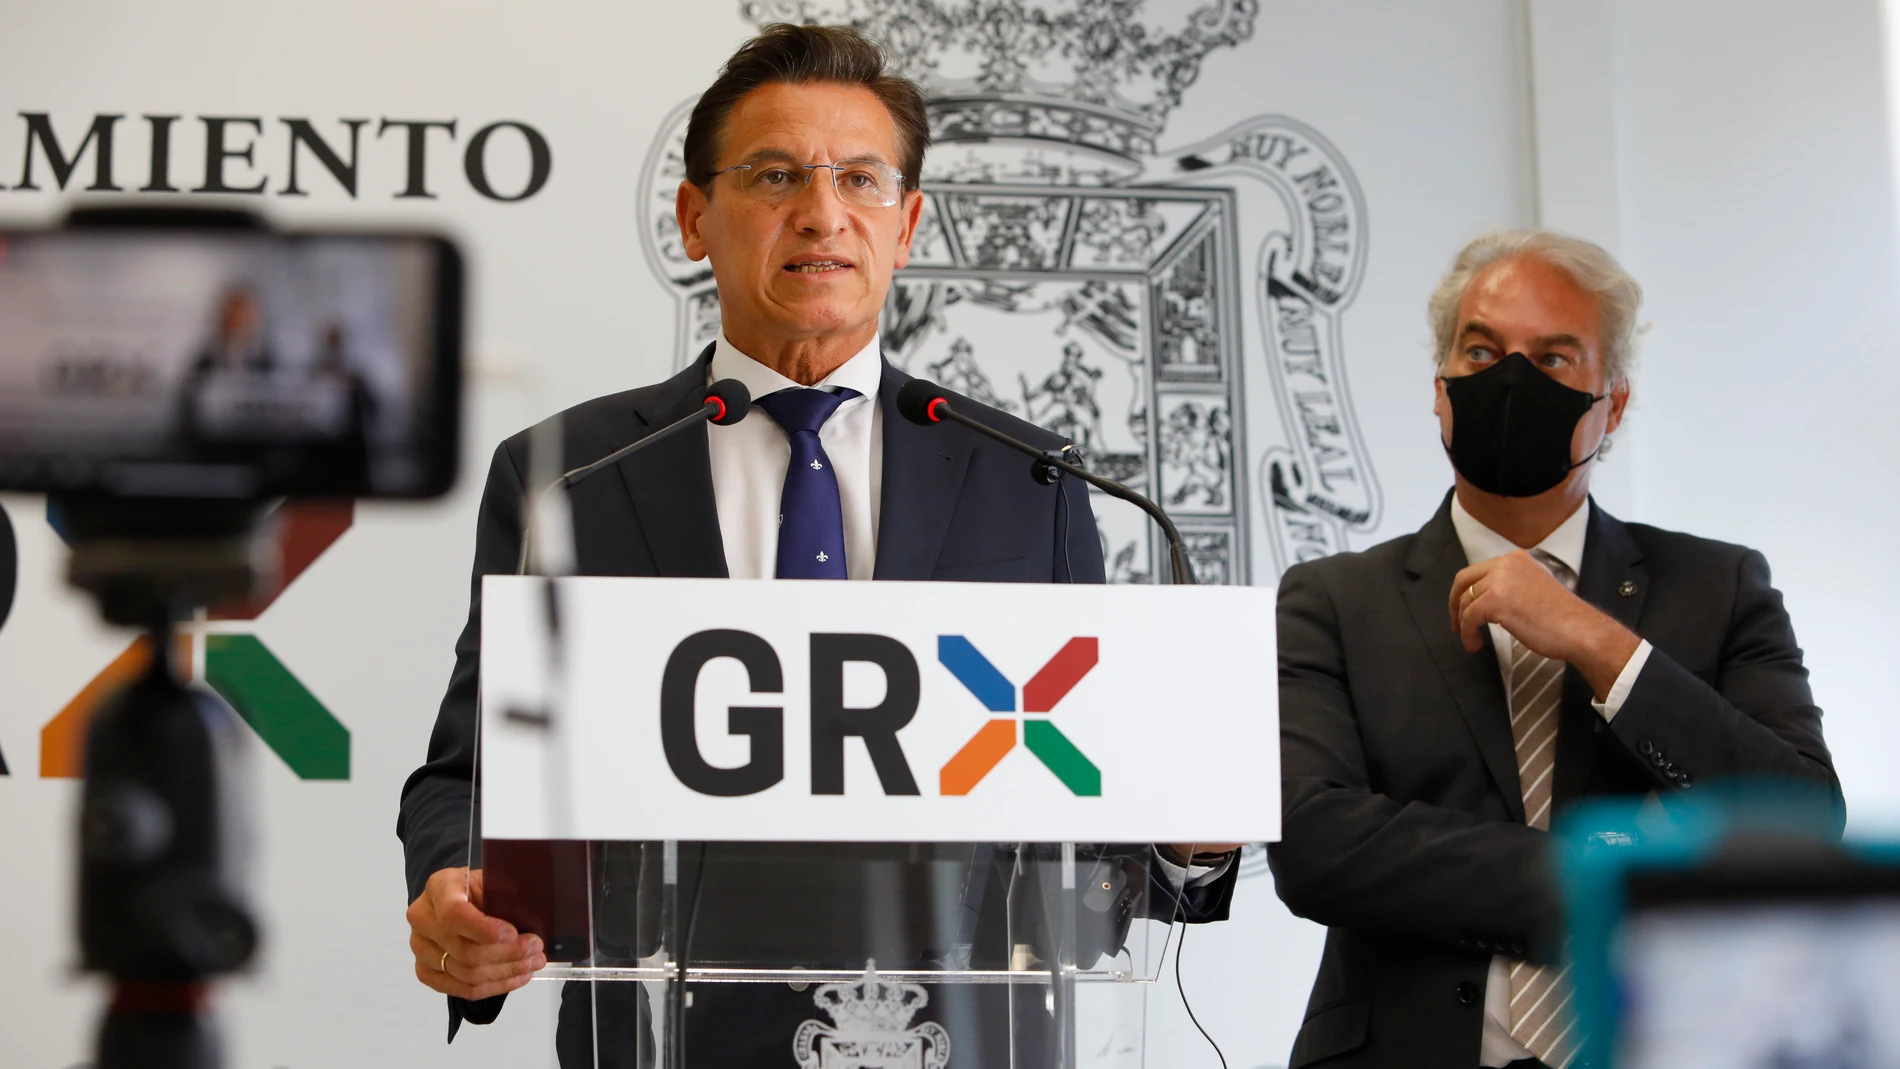 El alcalde de Granada, Luis Salvador, comparece ante los medios para abordar asuntos de actualidadad